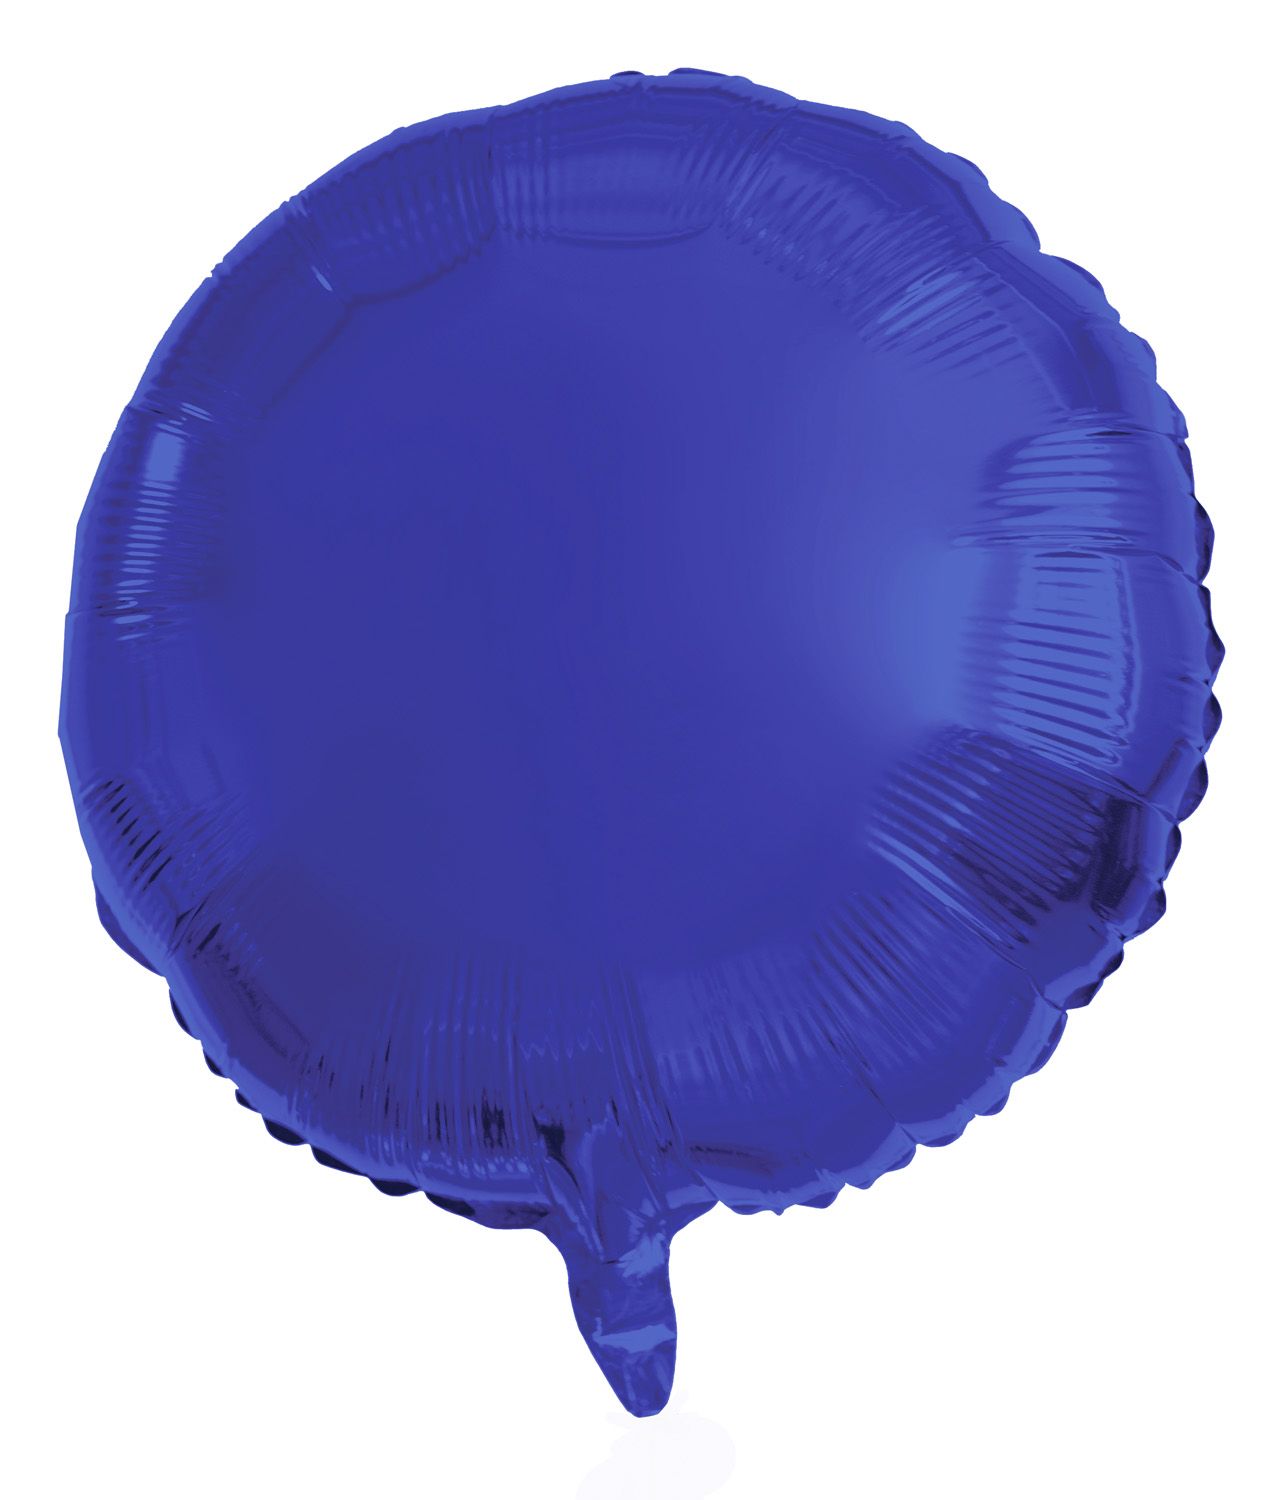 Ronde folieballon 45cm donker blauw